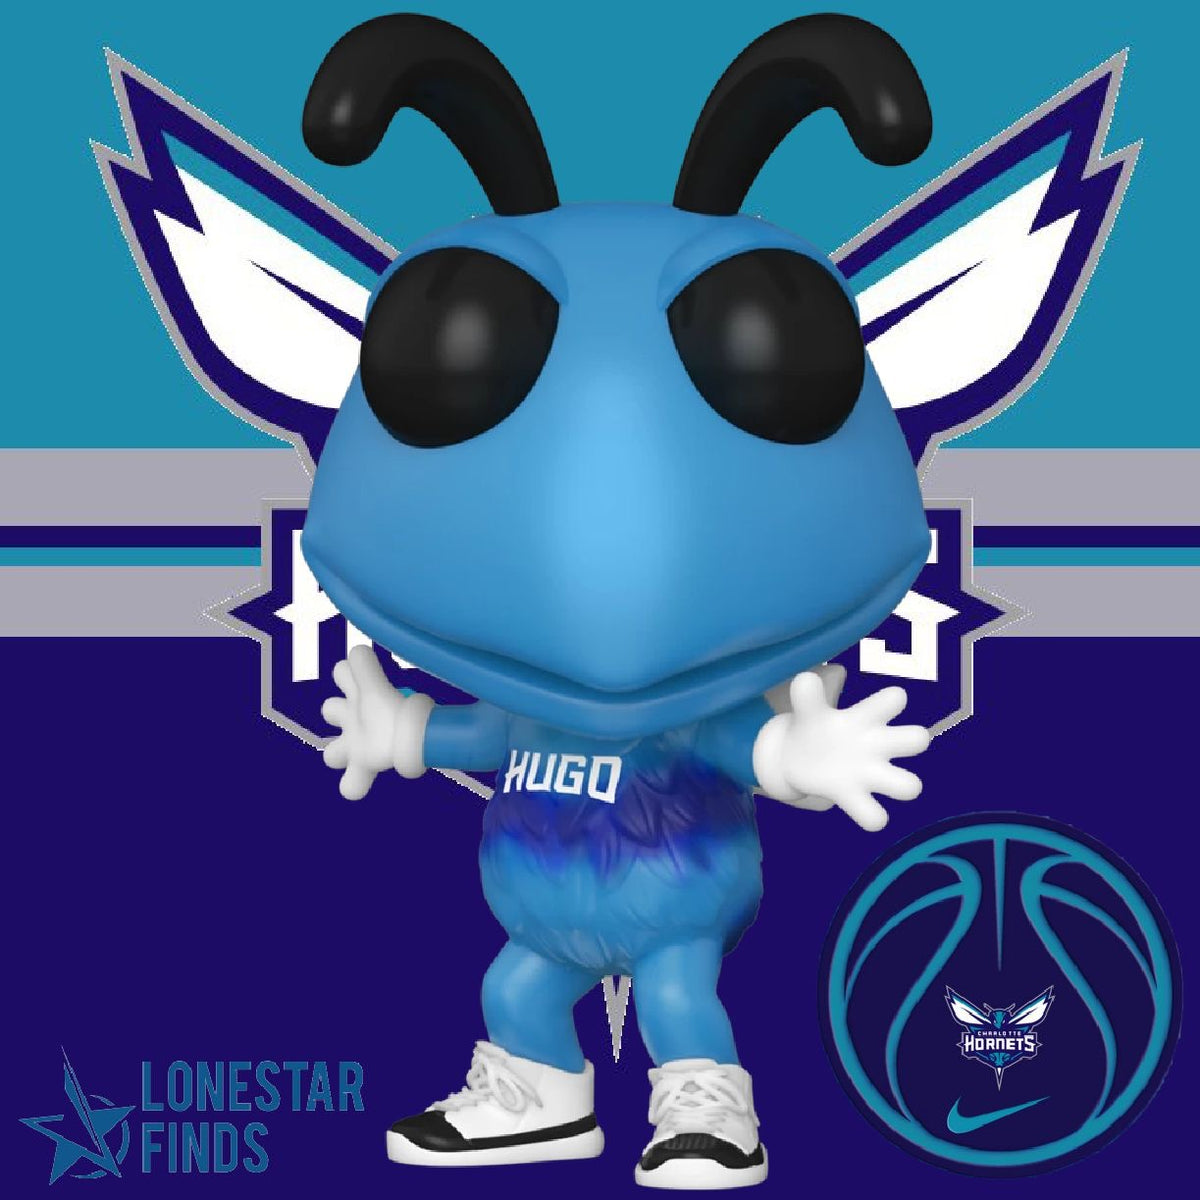 Hugo Charlotte hornets mascot Funko pop for Sale in East